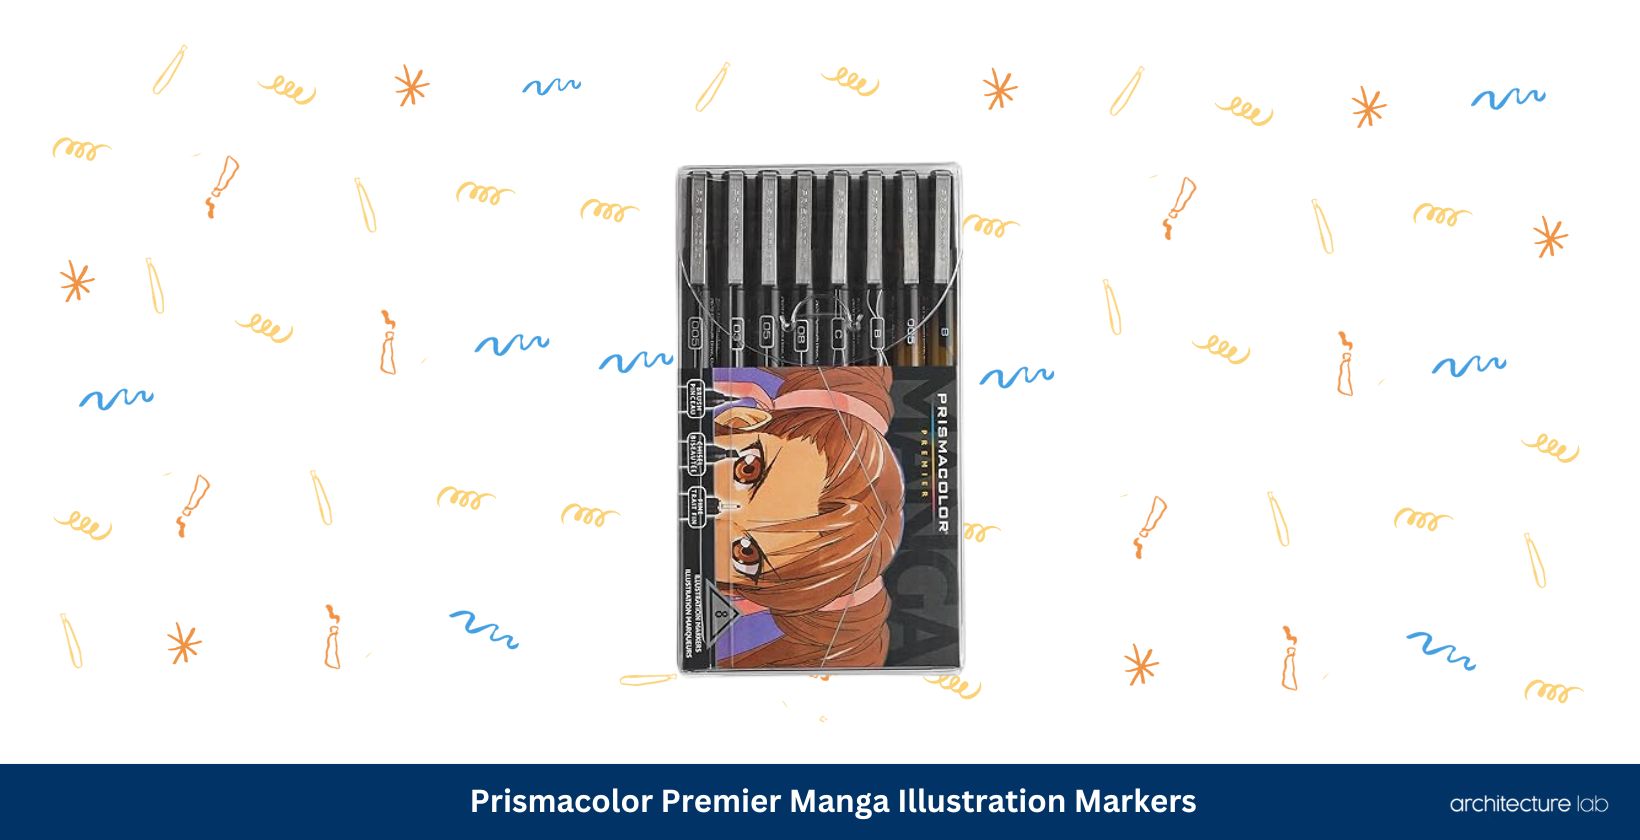 Prismacolor premier manga illustration markers